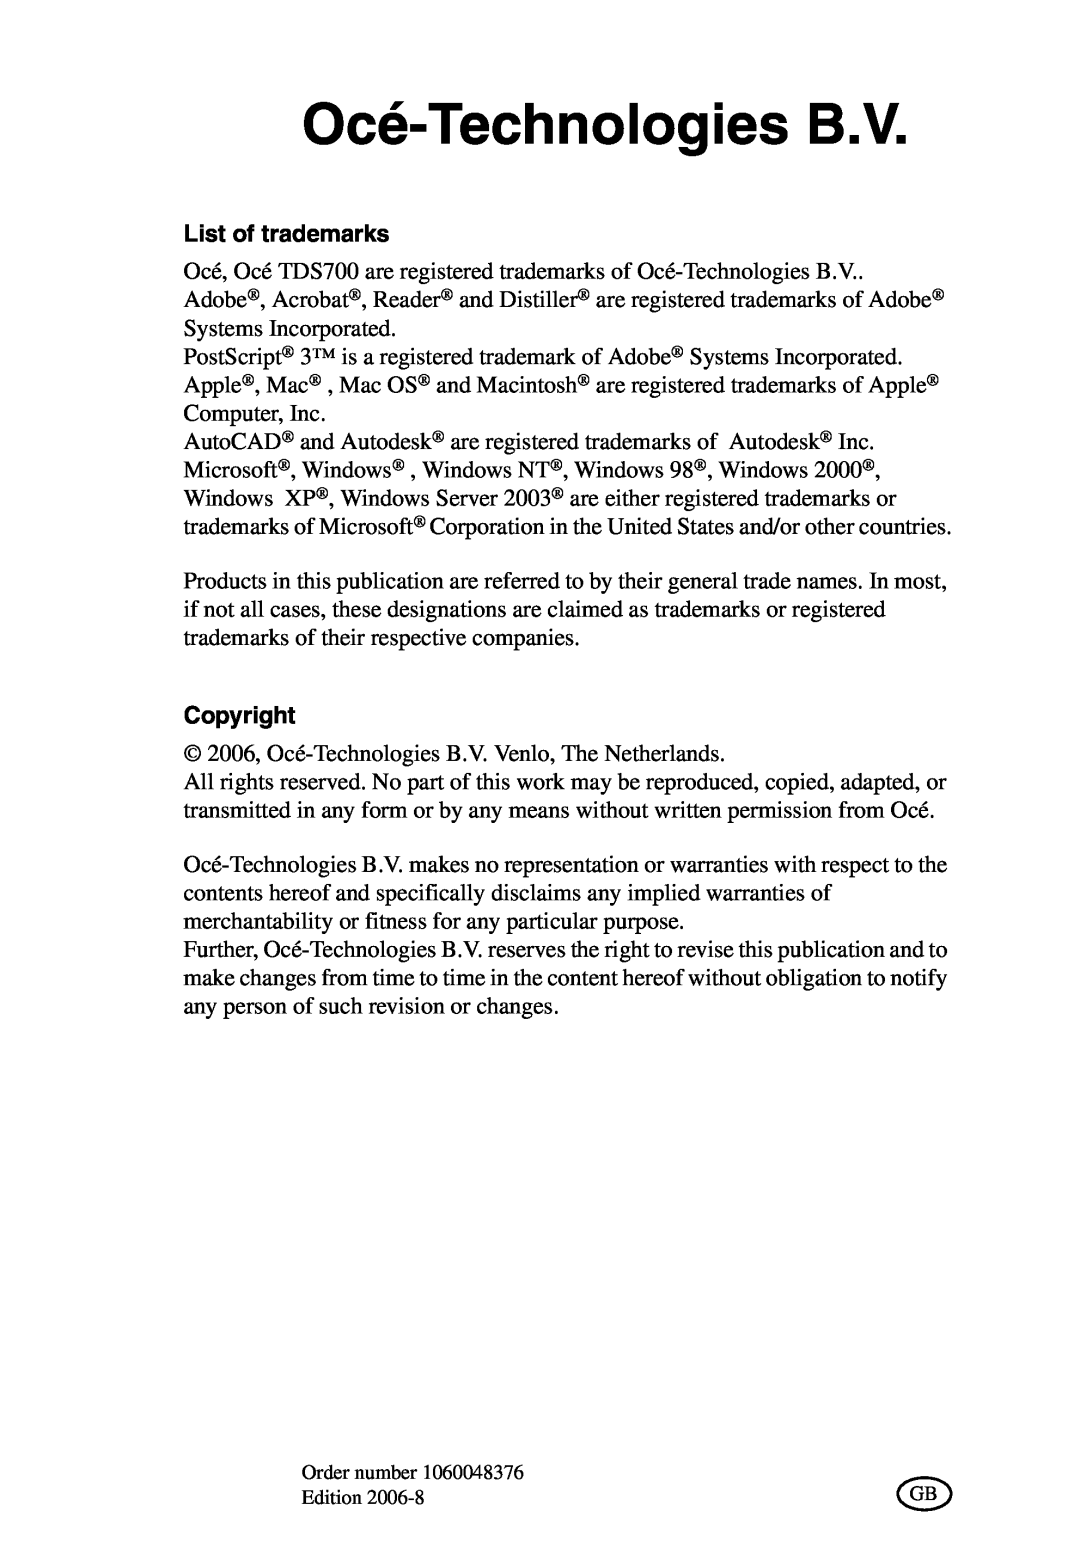 Oce North America TDS700 user manual Océ-Technologies B.V, List of trademarks, Copyright 